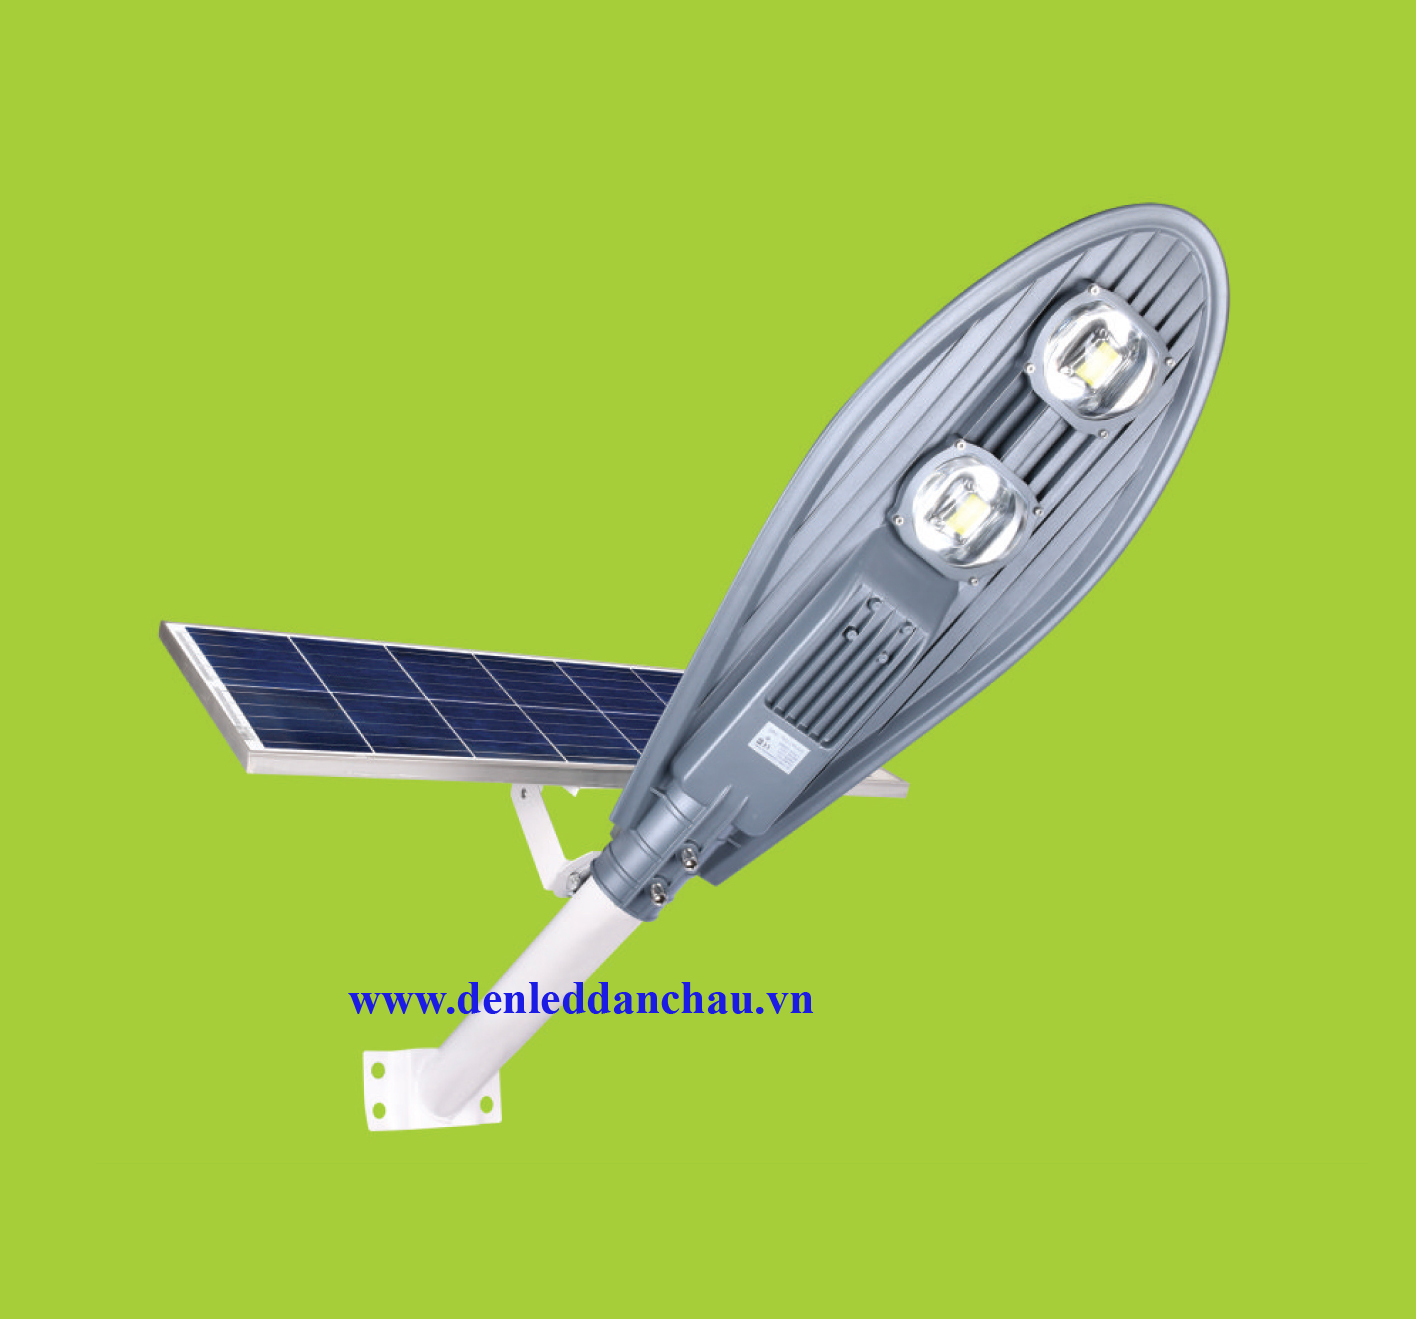 Đèn năng lượng mặt trời NL-03 100W